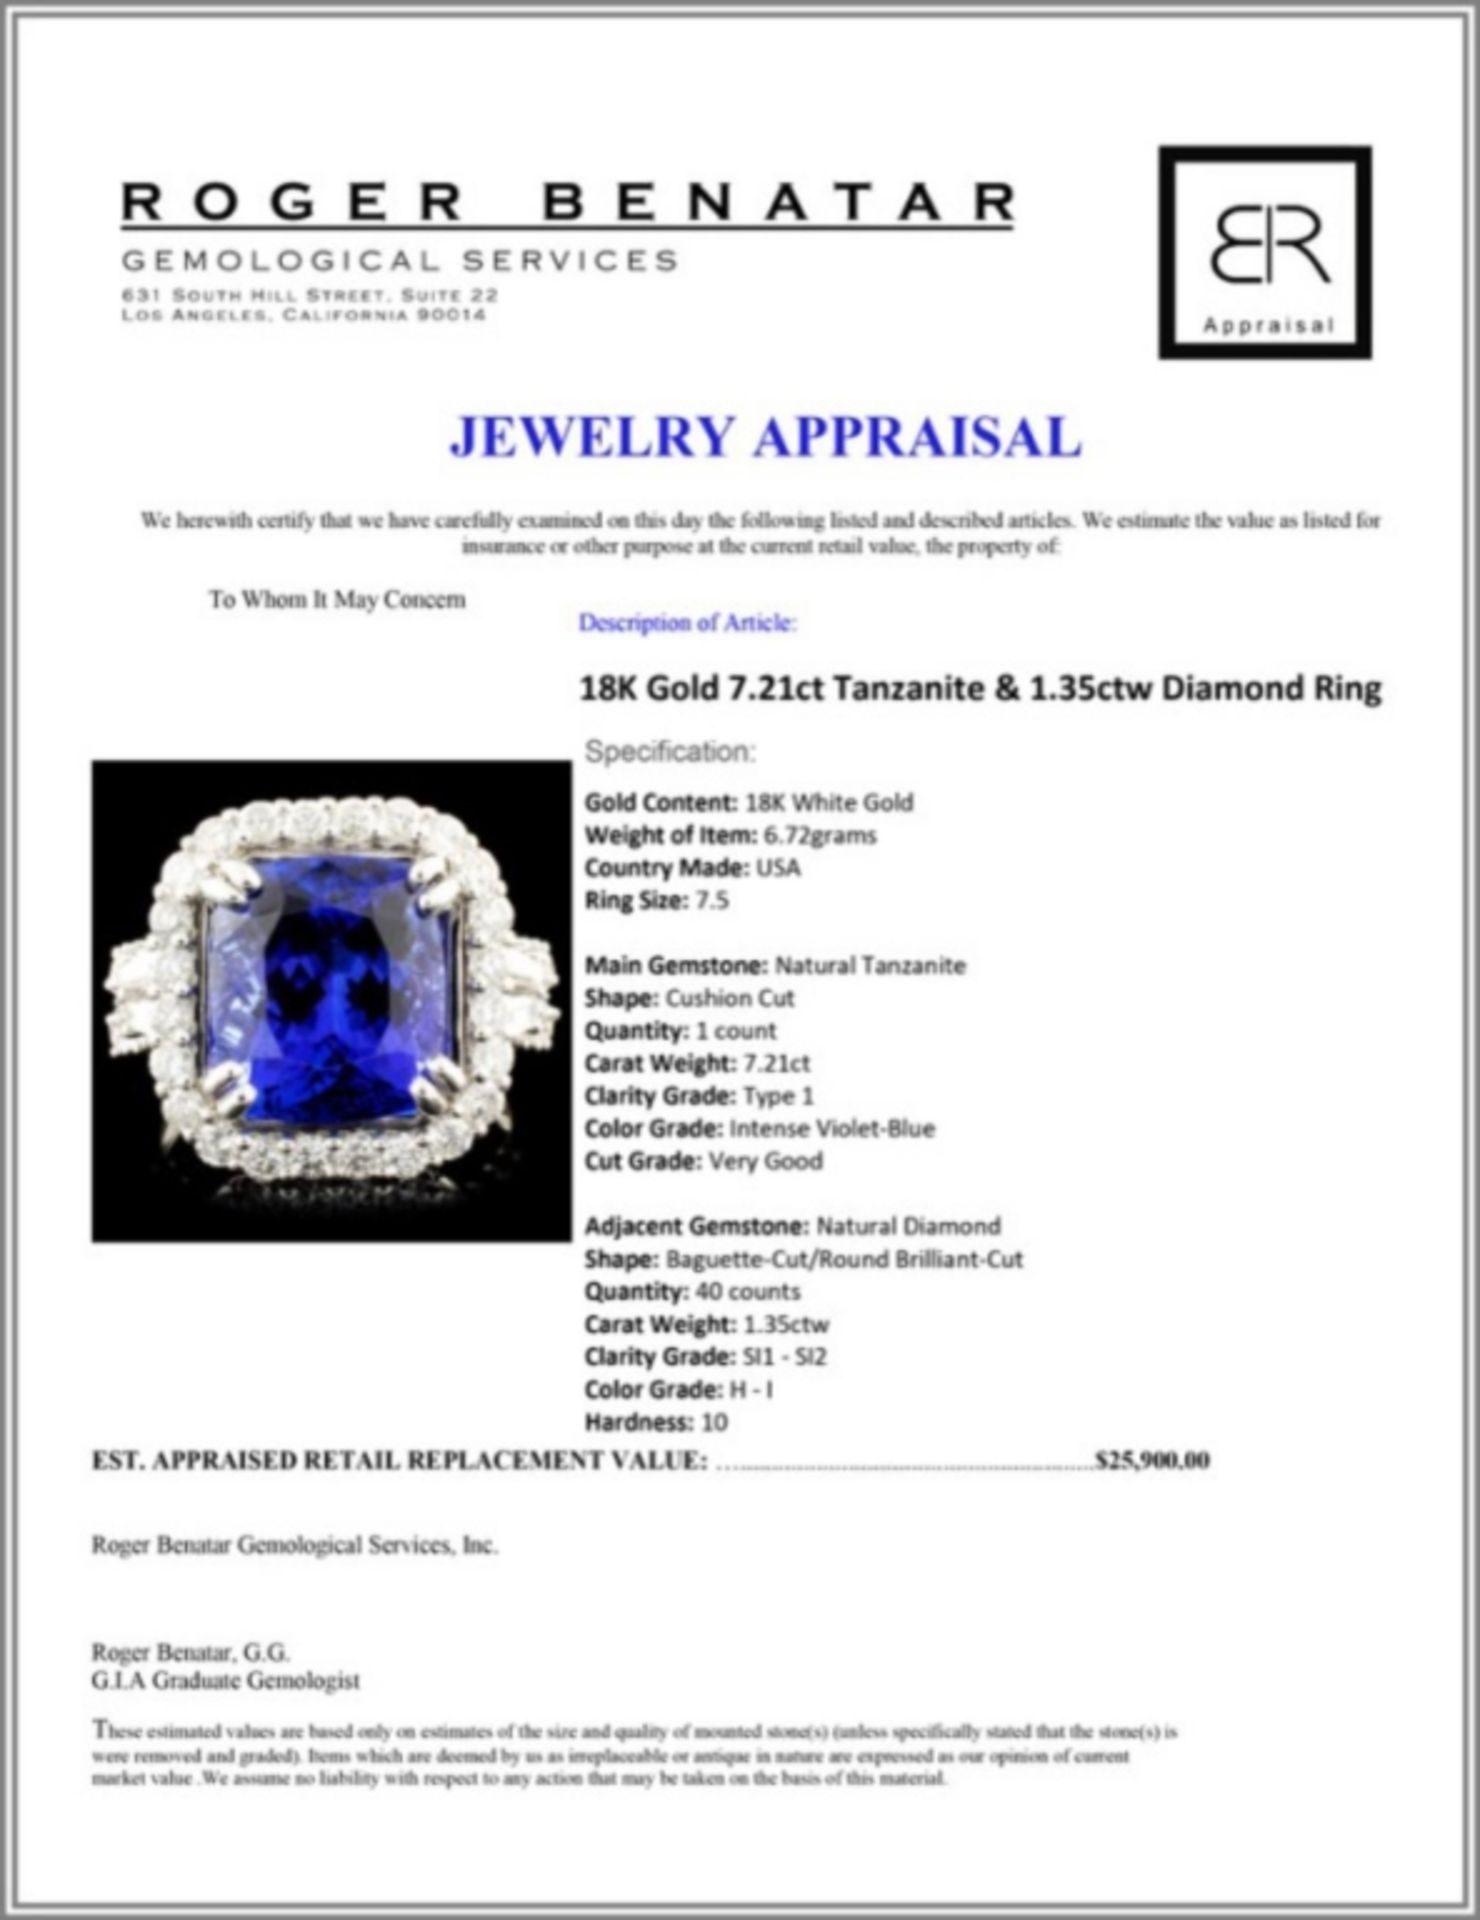 18K Gold 7.21ct Tanzanite & 1.35ctw Diamond Ring - Image 5 of 5